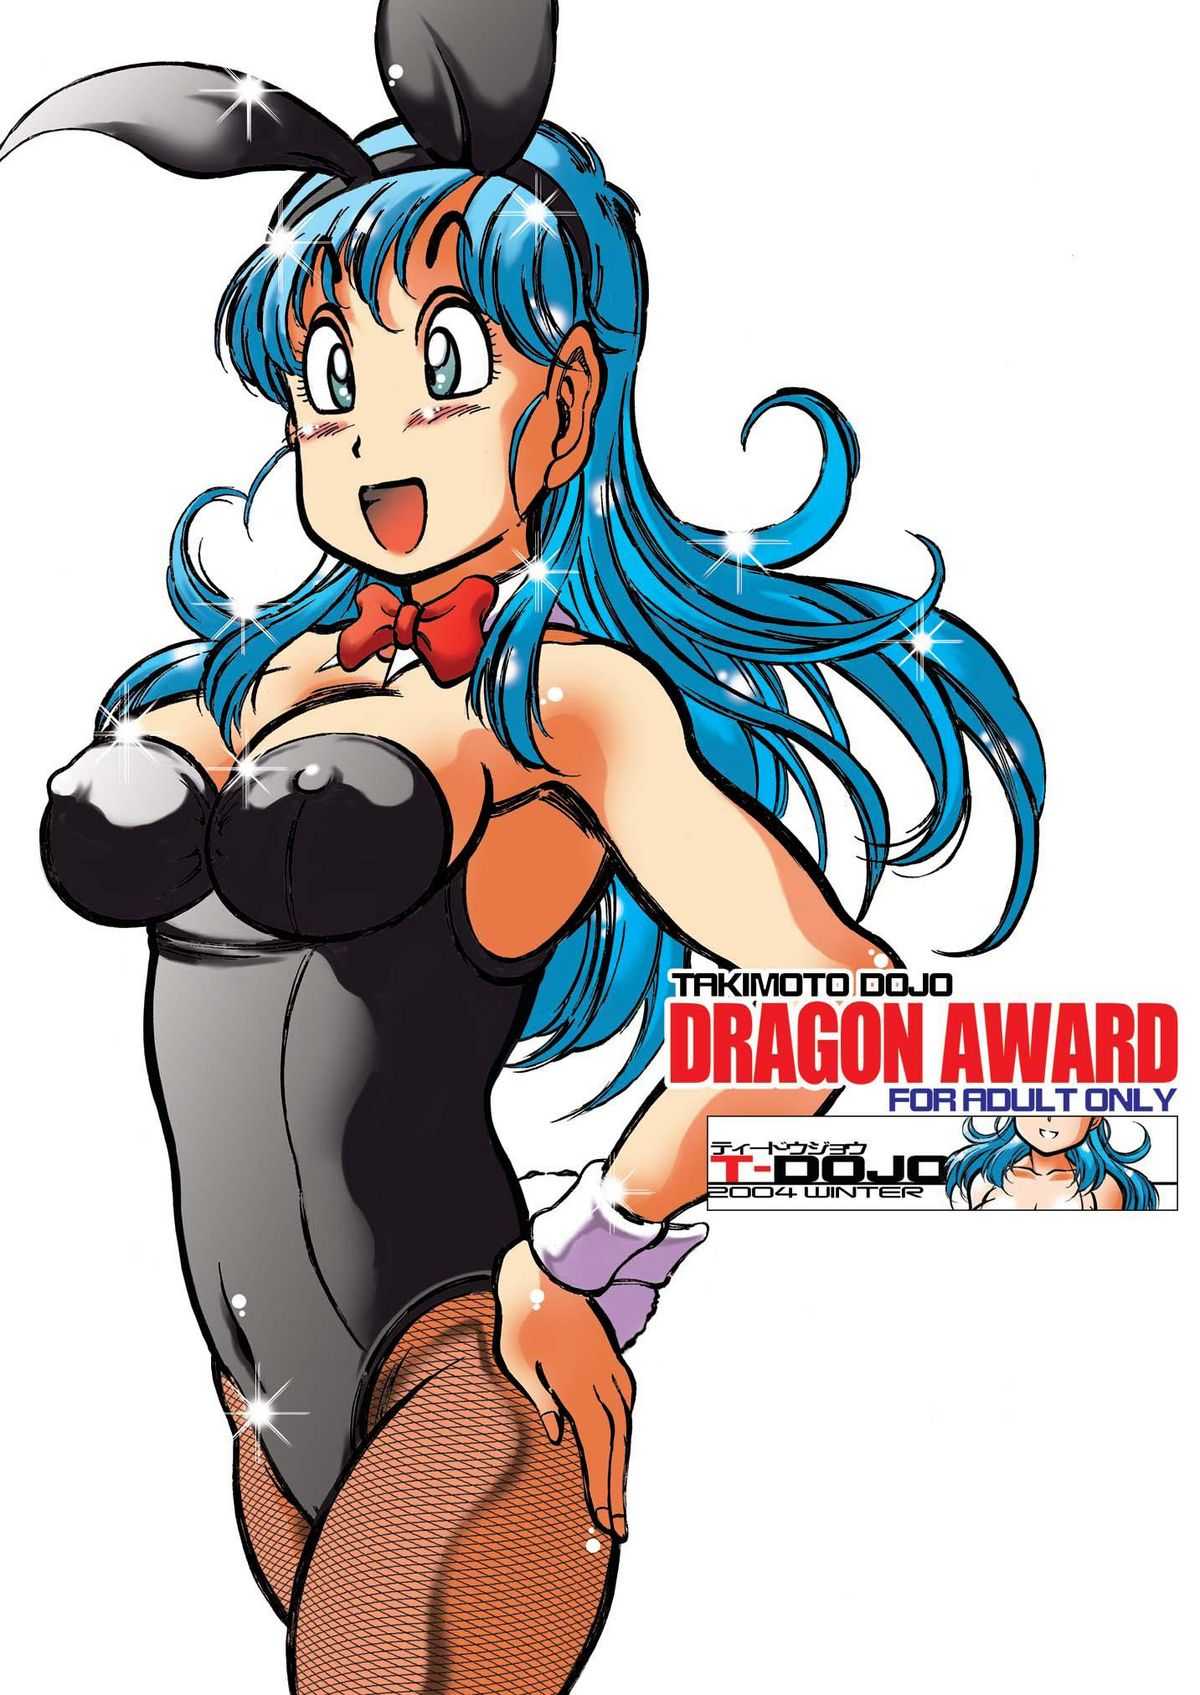 [SaHa] Takimoto Dojo - Dragon Award (English) 